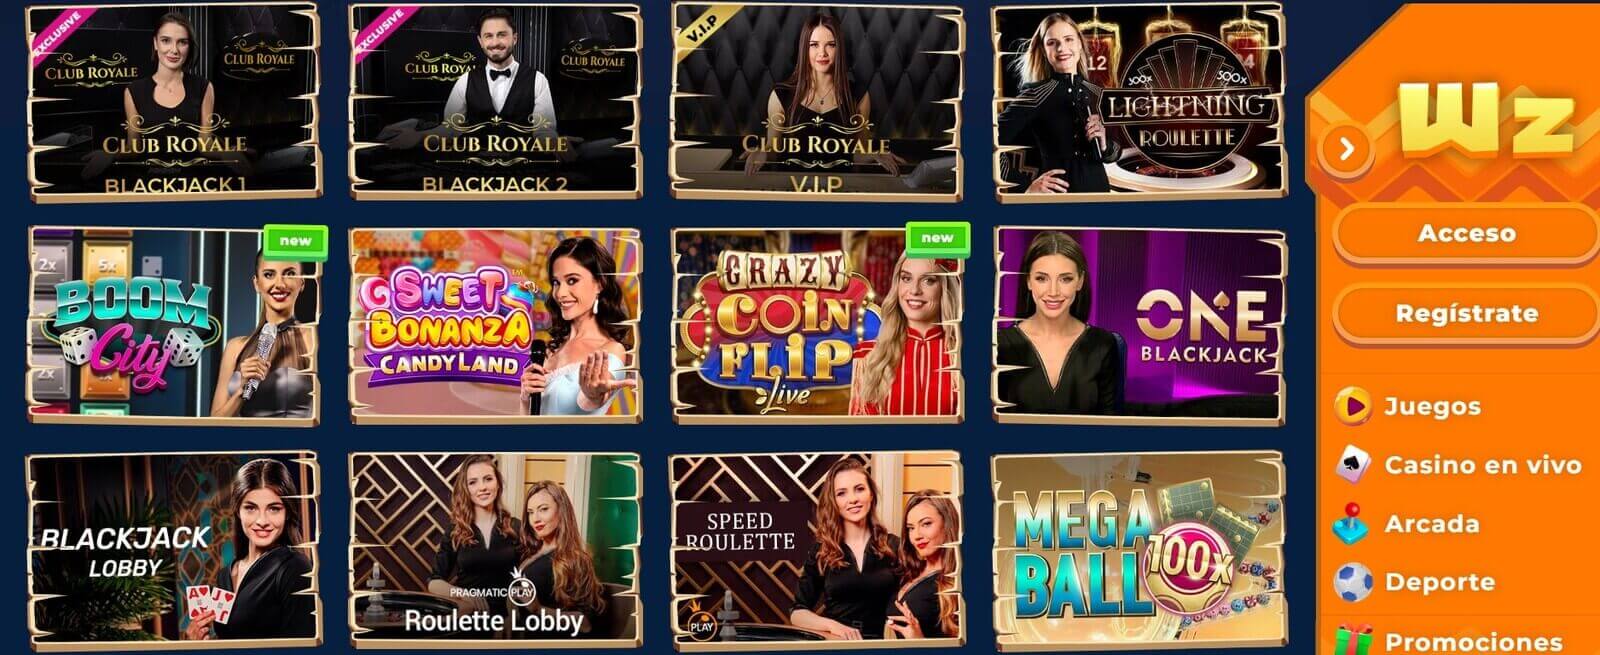 Juegos de casino en vivo de Wazamba Casino online en Chile y Perú